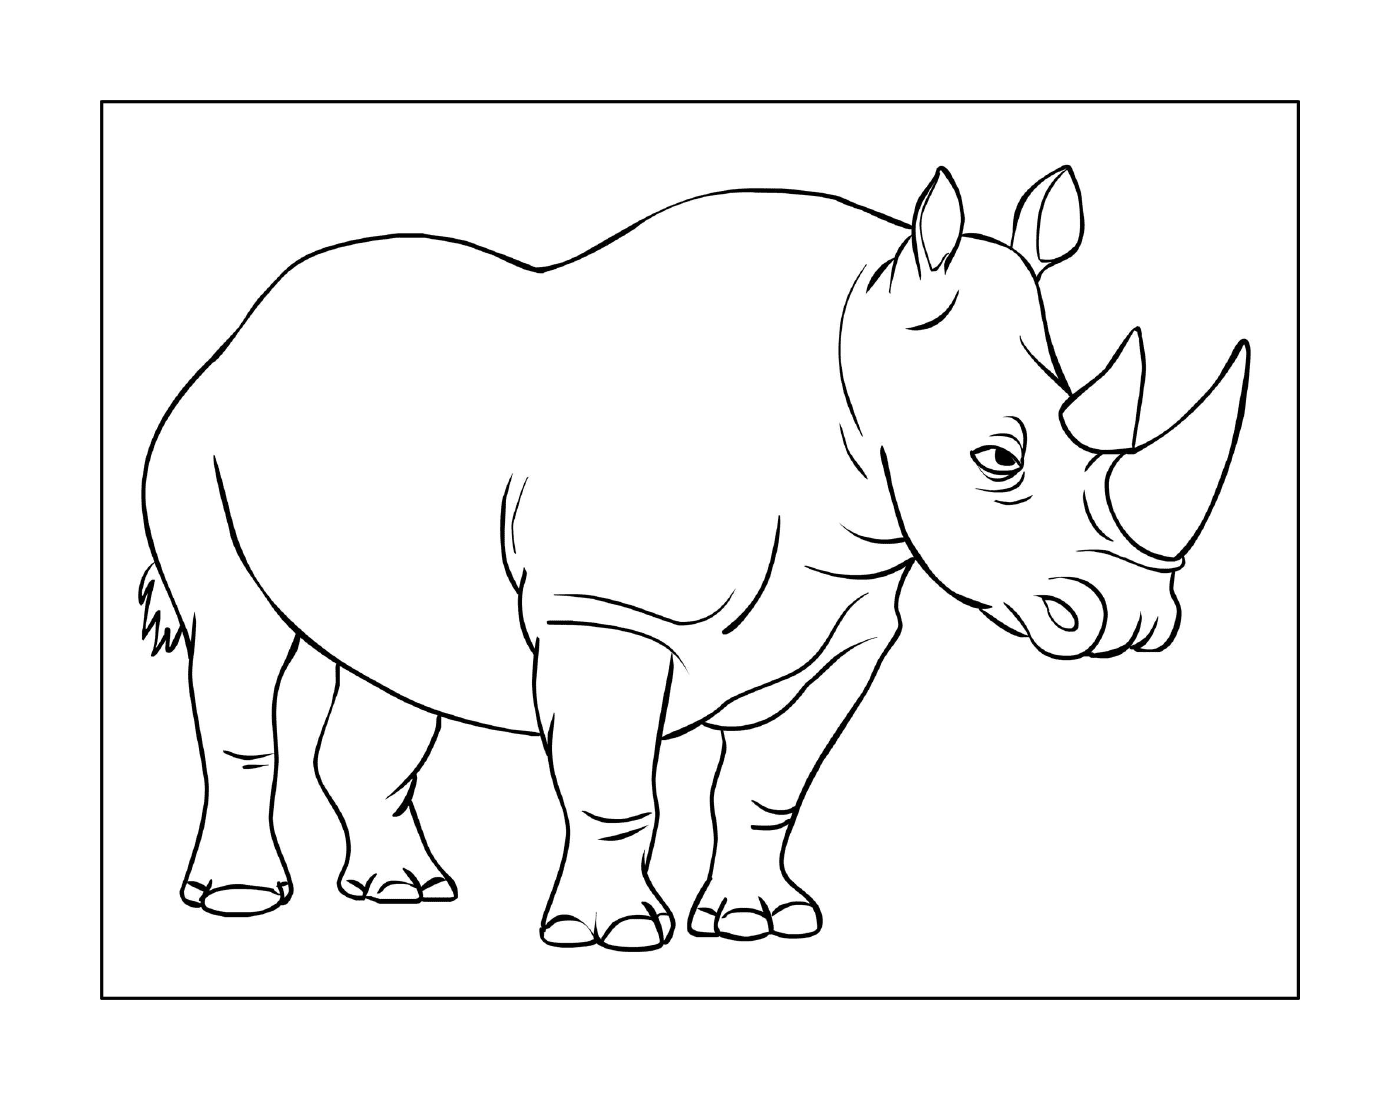  A rhinoceros 